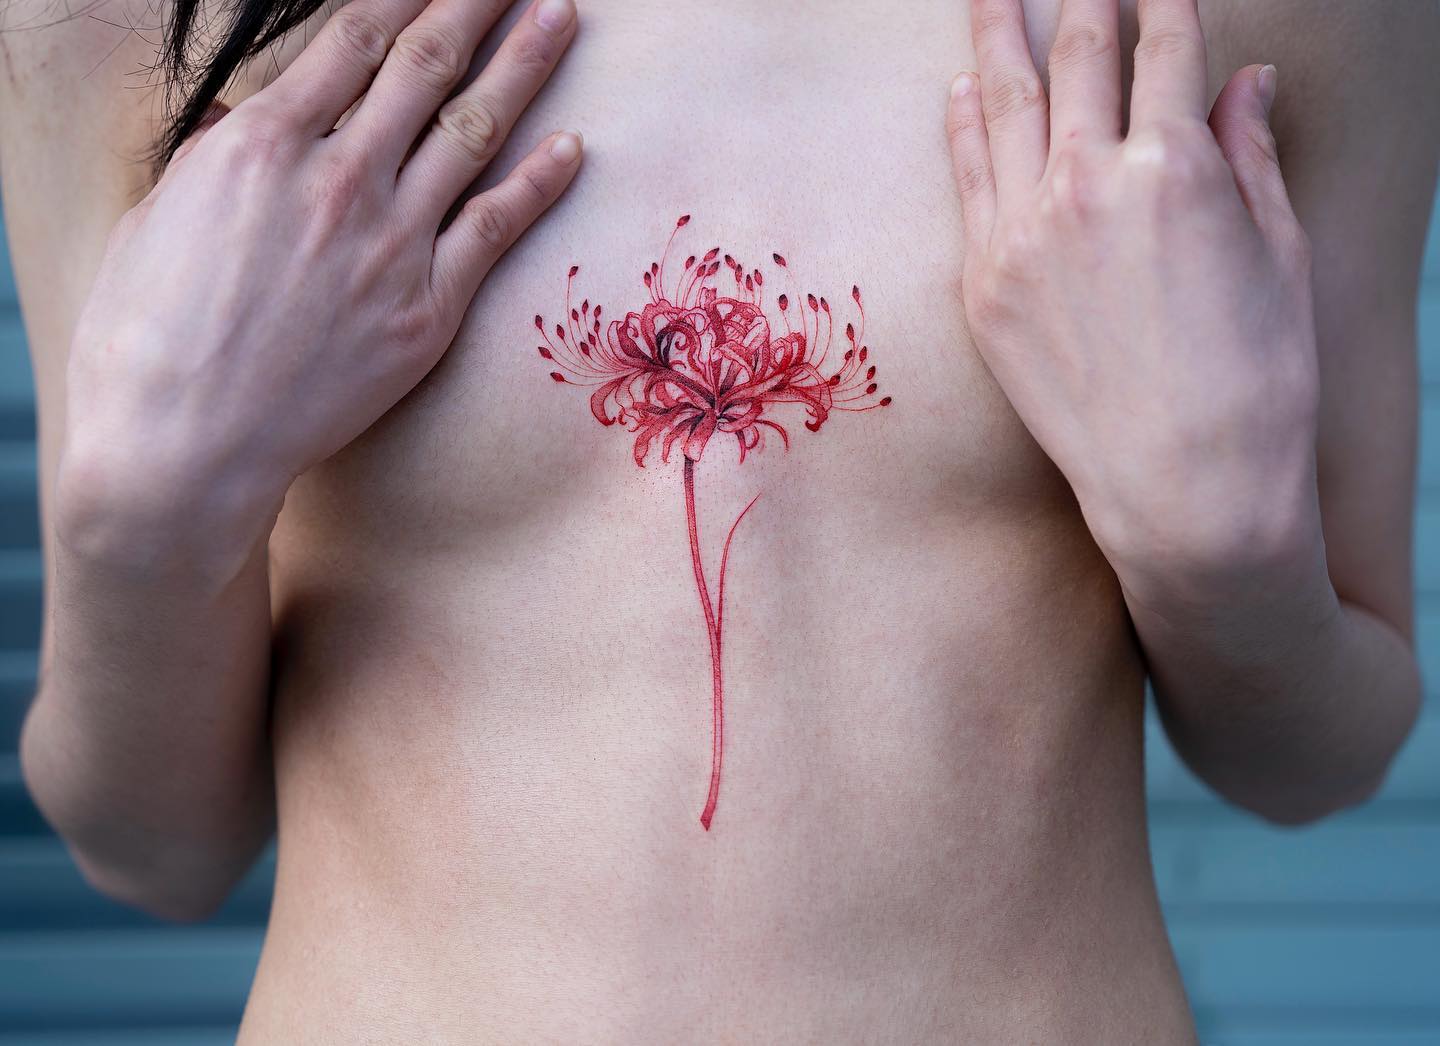 Татуировка лилия - что означает в зависимости от вида и места нанесения, креативные фото идеи